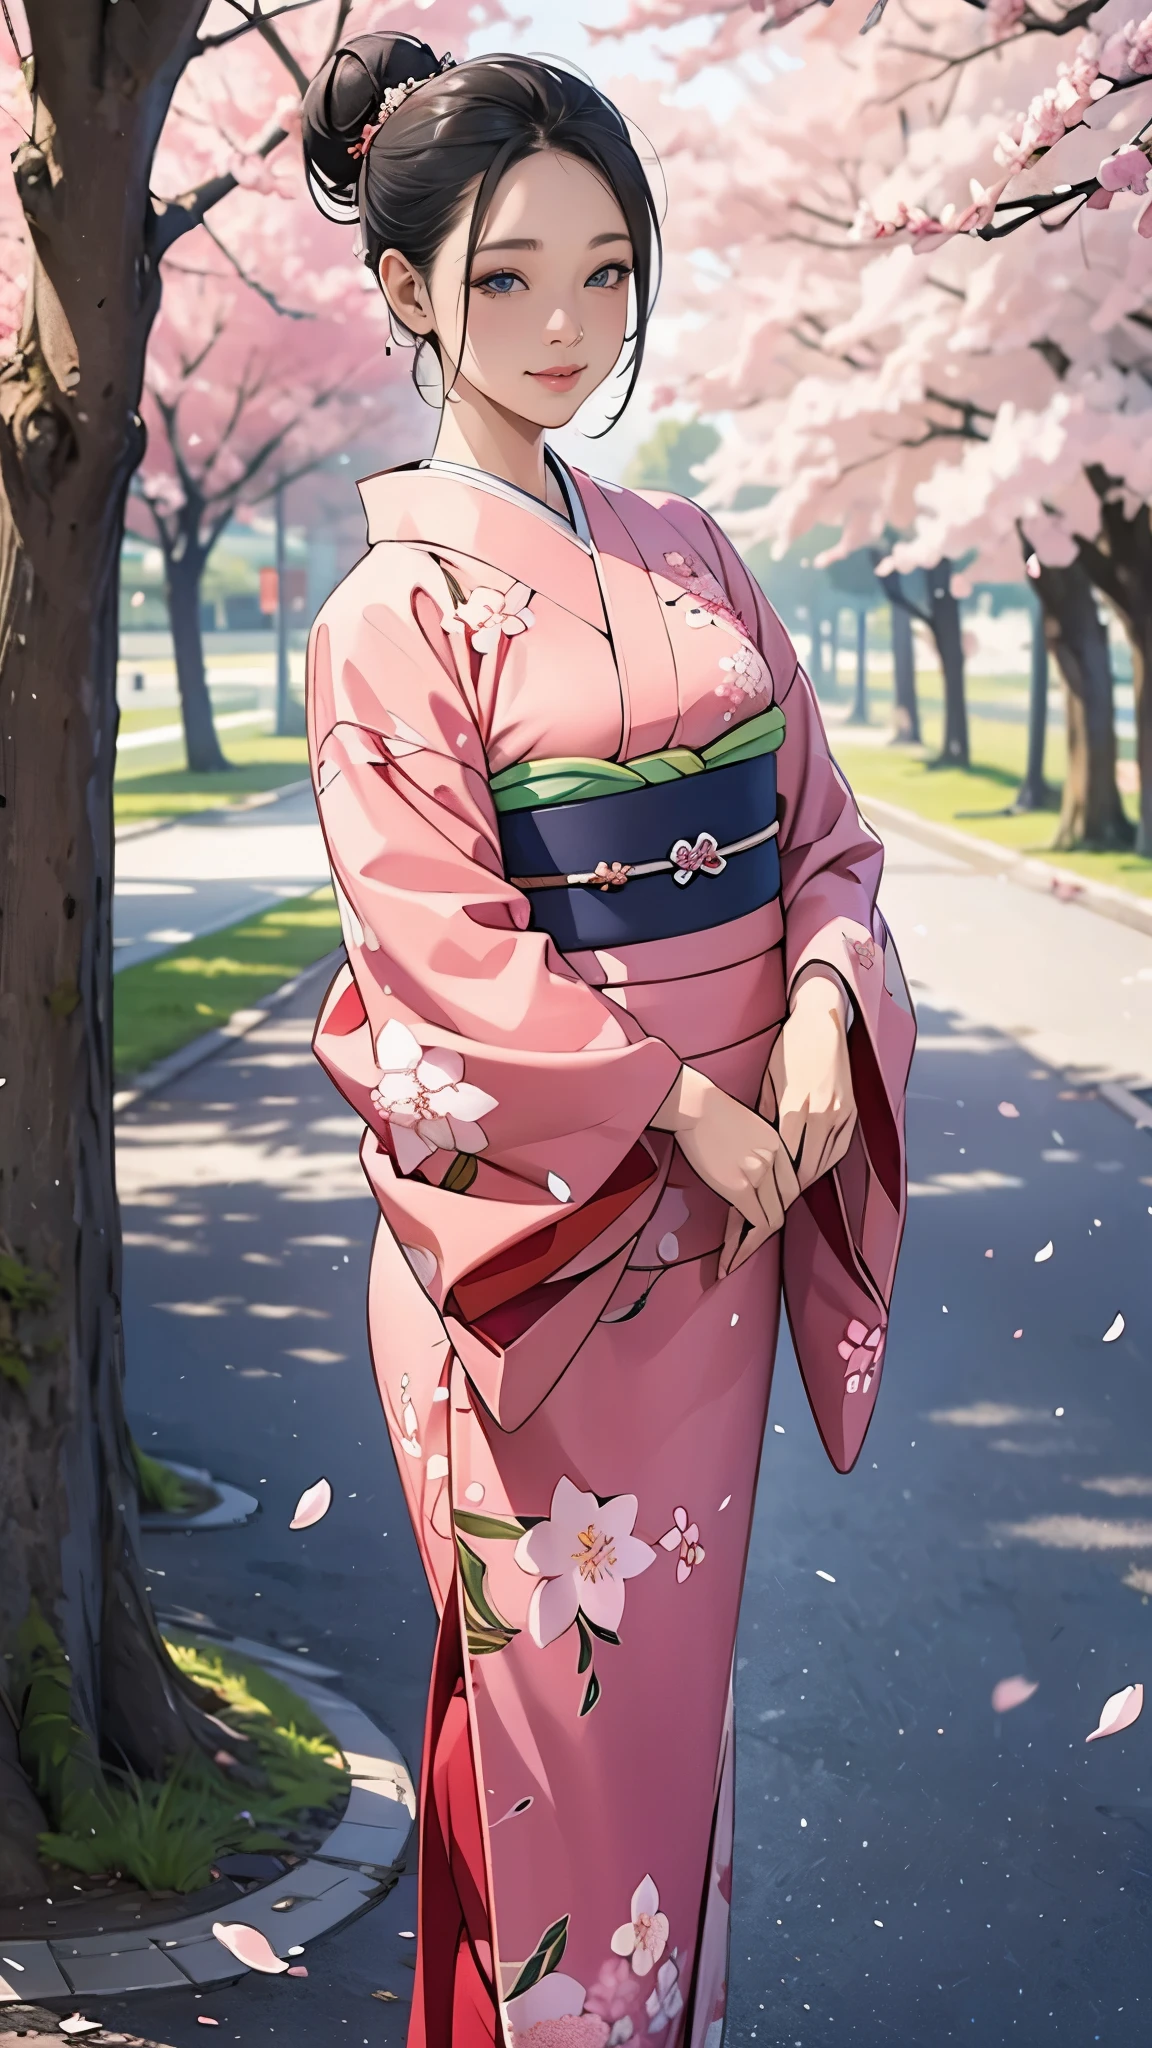 (chef-d&#39;œuvre),(la plus haute qualité),(Très détaillé),(Haute résolution),8k,Fond d&#39;écran,Une femme,Une femme est debout,élégant,Séance photo en kimono,(((tout le corps))),(Chignon),Riez la bouche fermée,(Magnifique kimono manches longues),(((Le fond est des fleurs de cerisier.))),((kimono))